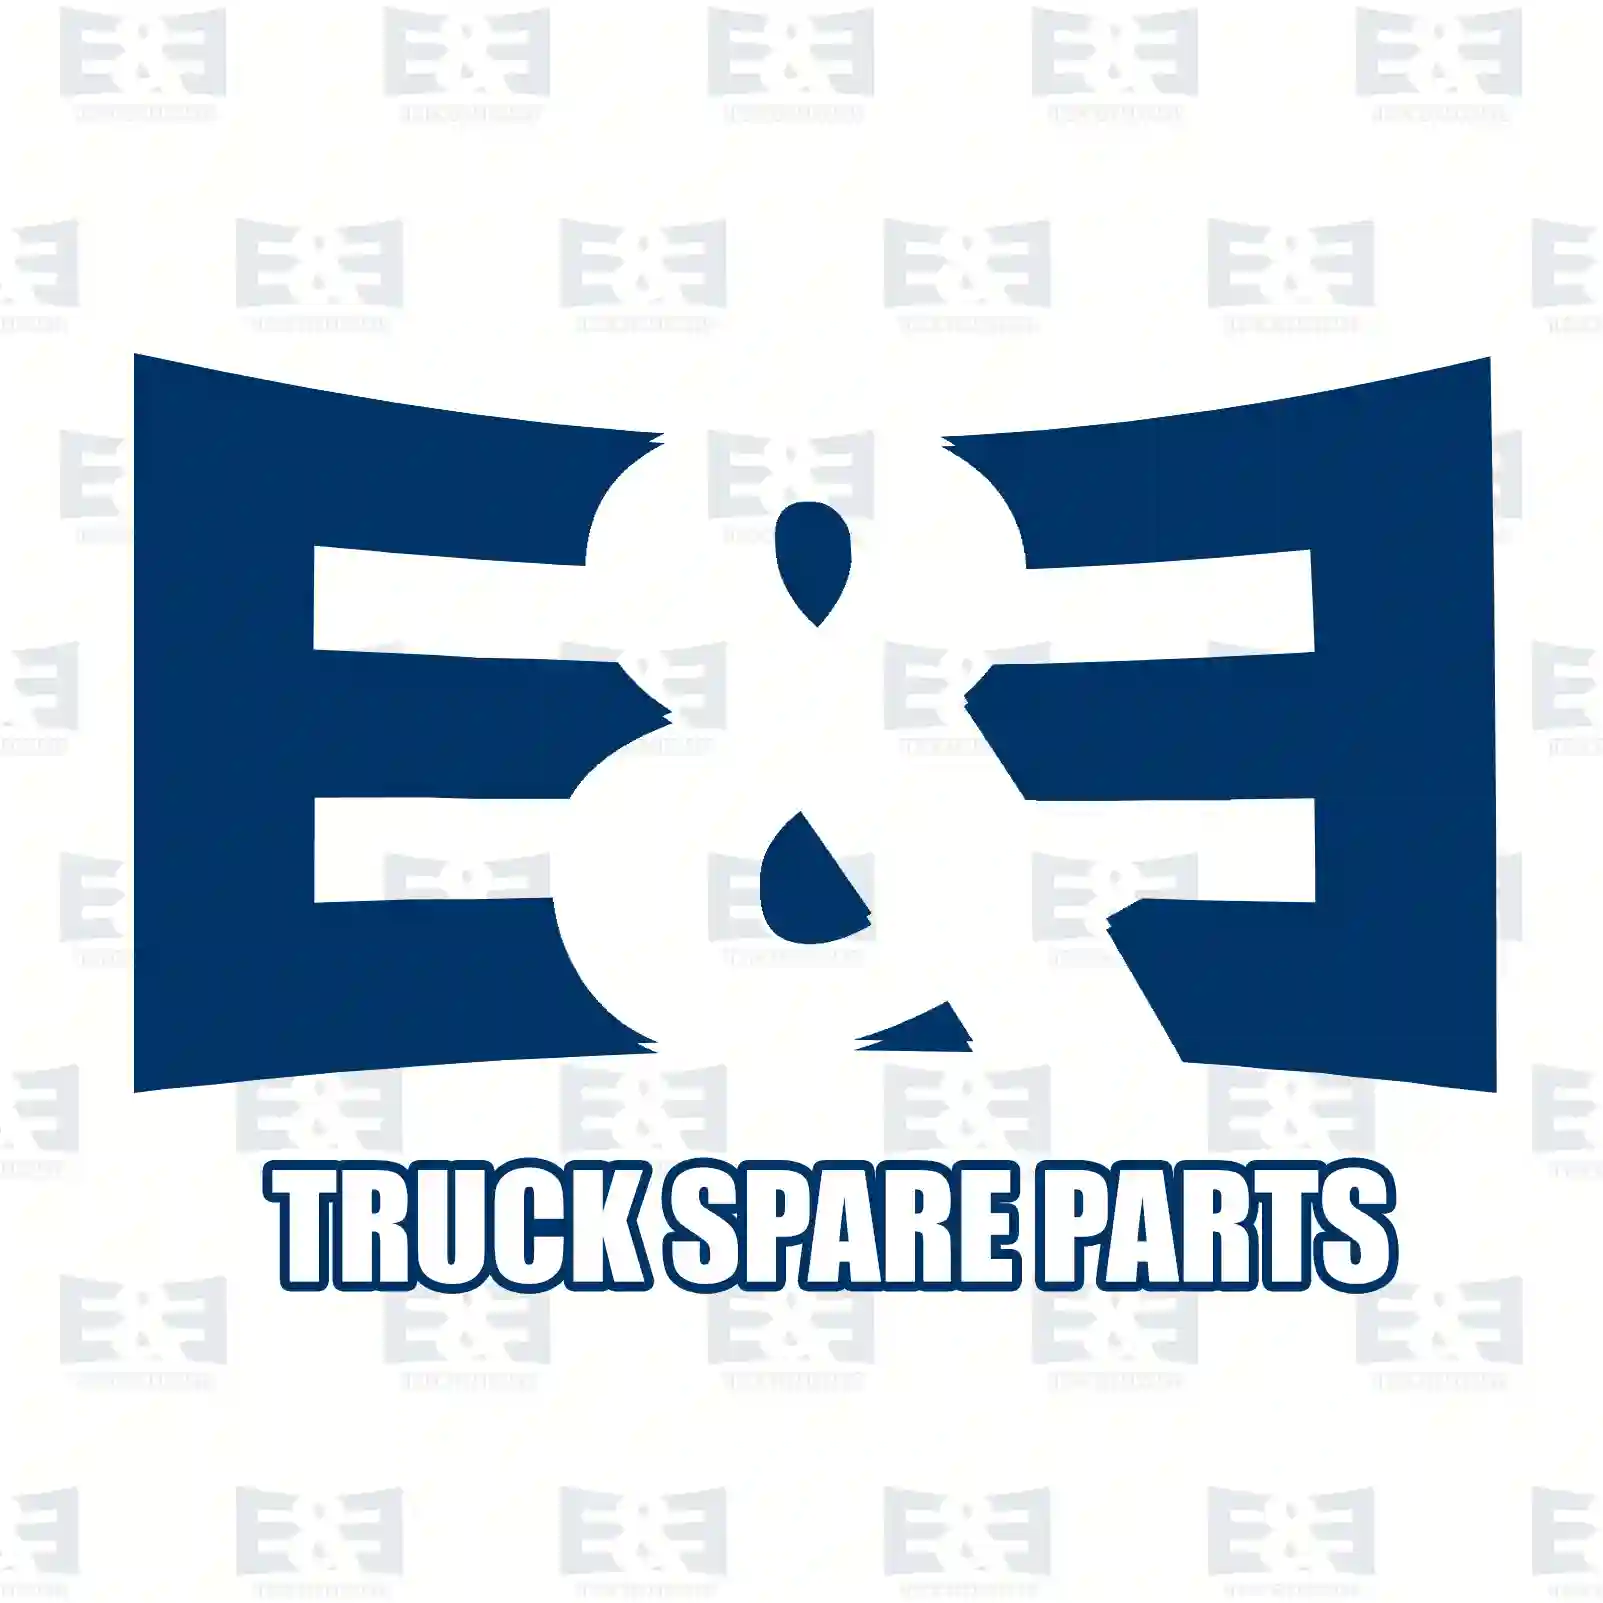 Service kit, 2E2207470, 5001874898, 5001875125, ZG02088-0008 ||  2E2207470 E&E Truck Spare Parts | Truck Spare Parts, Auotomotive Spare Parts Service kit, 2E2207470, 5001874898, 5001875125, ZG02088-0008 ||  2E2207470 E&E Truck Spare Parts | Truck Spare Parts, Auotomotive Spare Parts